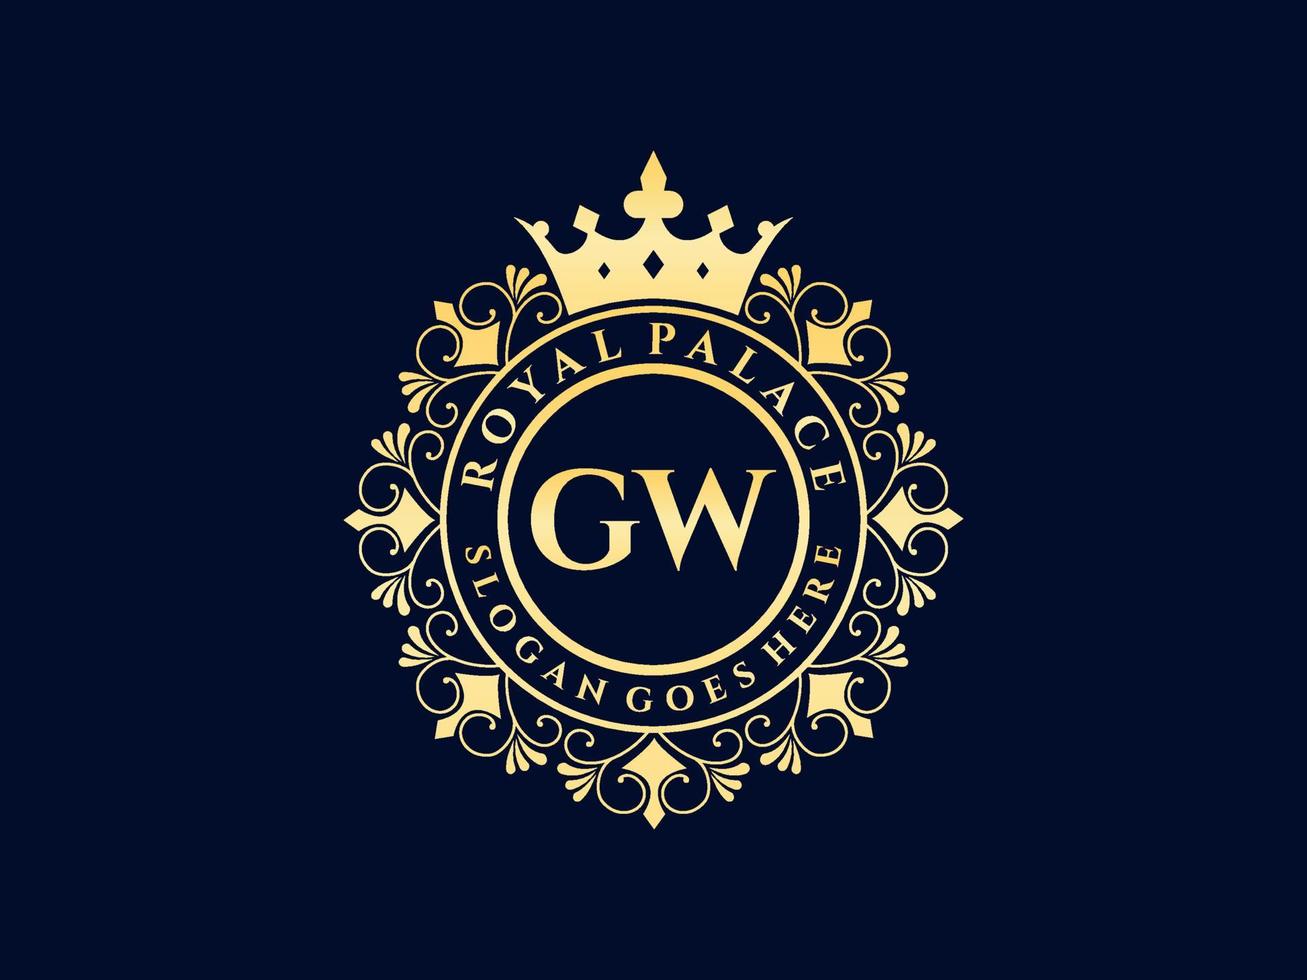 lettre gw logo victorien de luxe royal antique avec cadre ornemental. vecteur